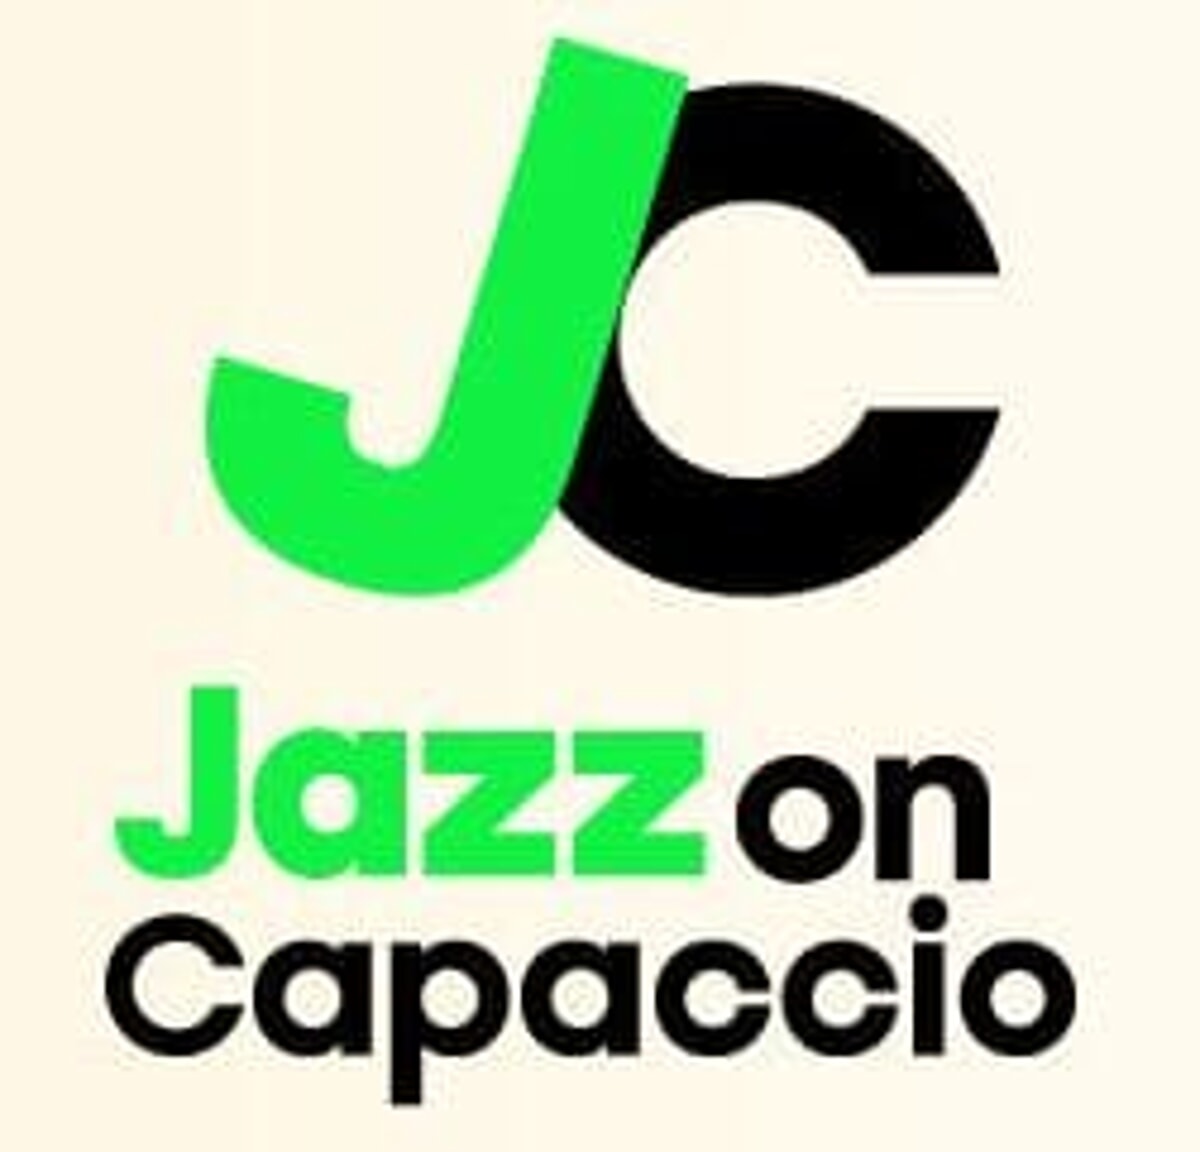 Concerti, ritorna “Jazz on Capaccio”: il programma completo